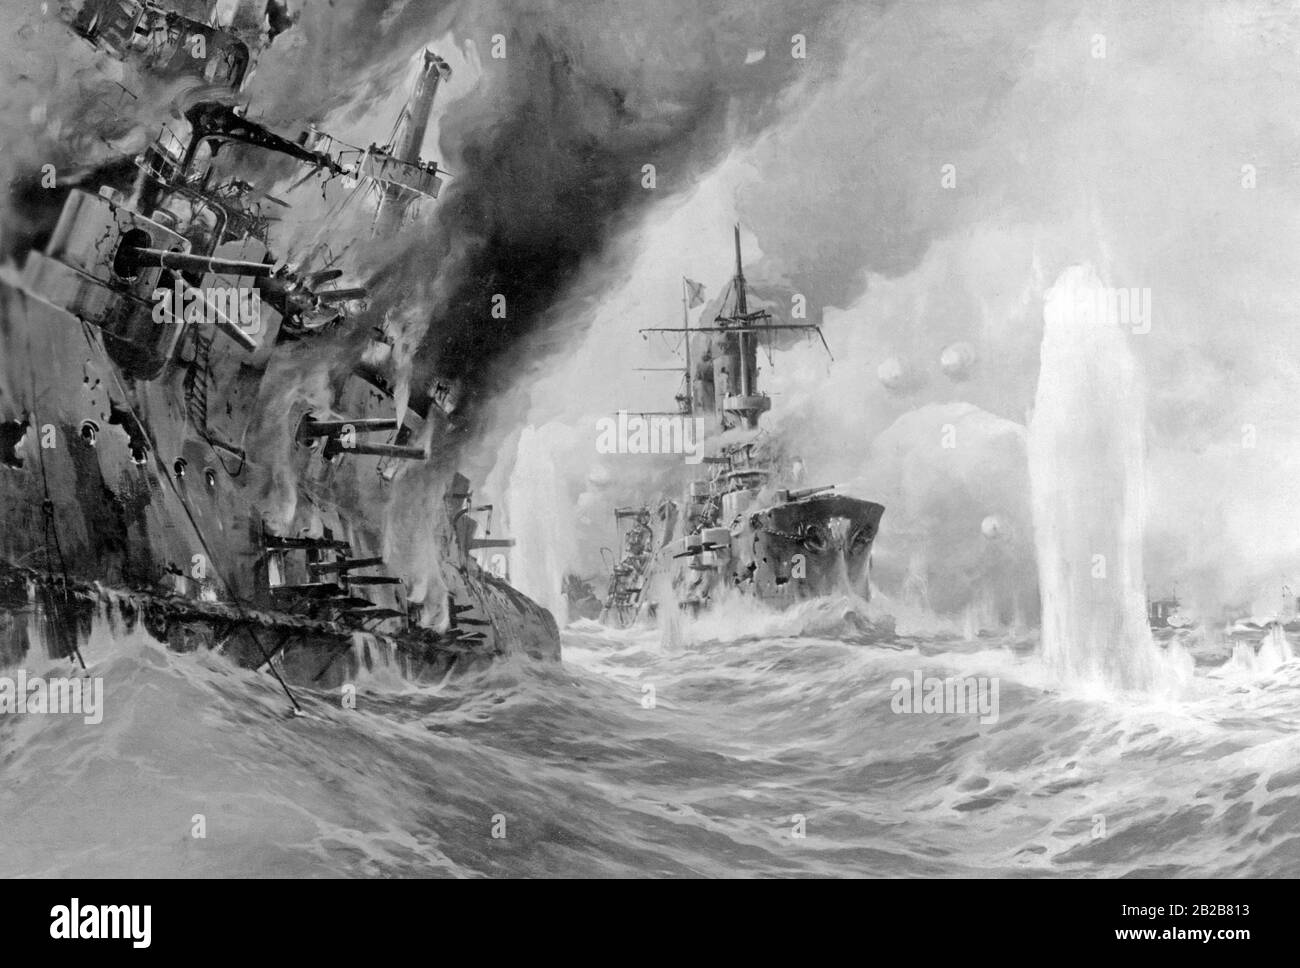 Durante la guerra ruso-japonesa: Batalla naval de Tsushima el 27.5.1905, donde la flota báltica rusa sufrió una aplastante derrota. Foto de stock